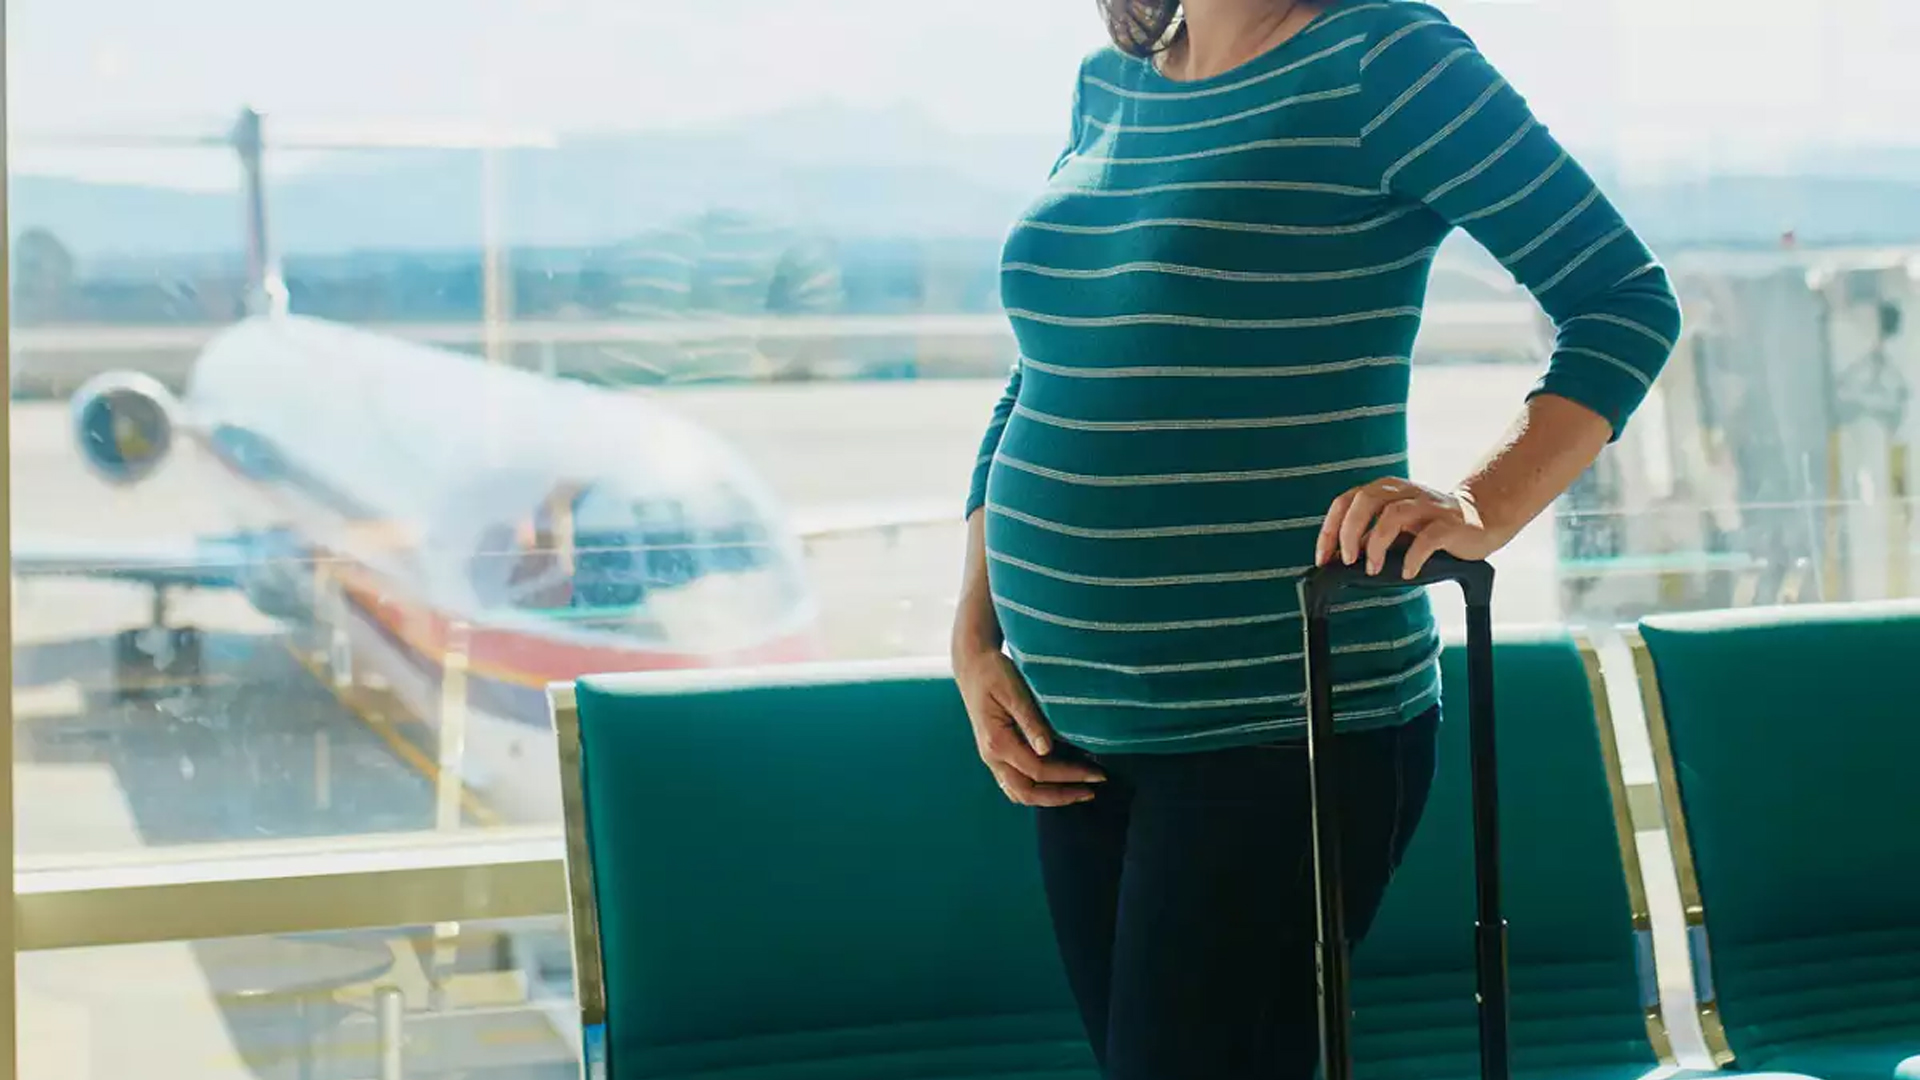 سفر با هواپیما در بارداری